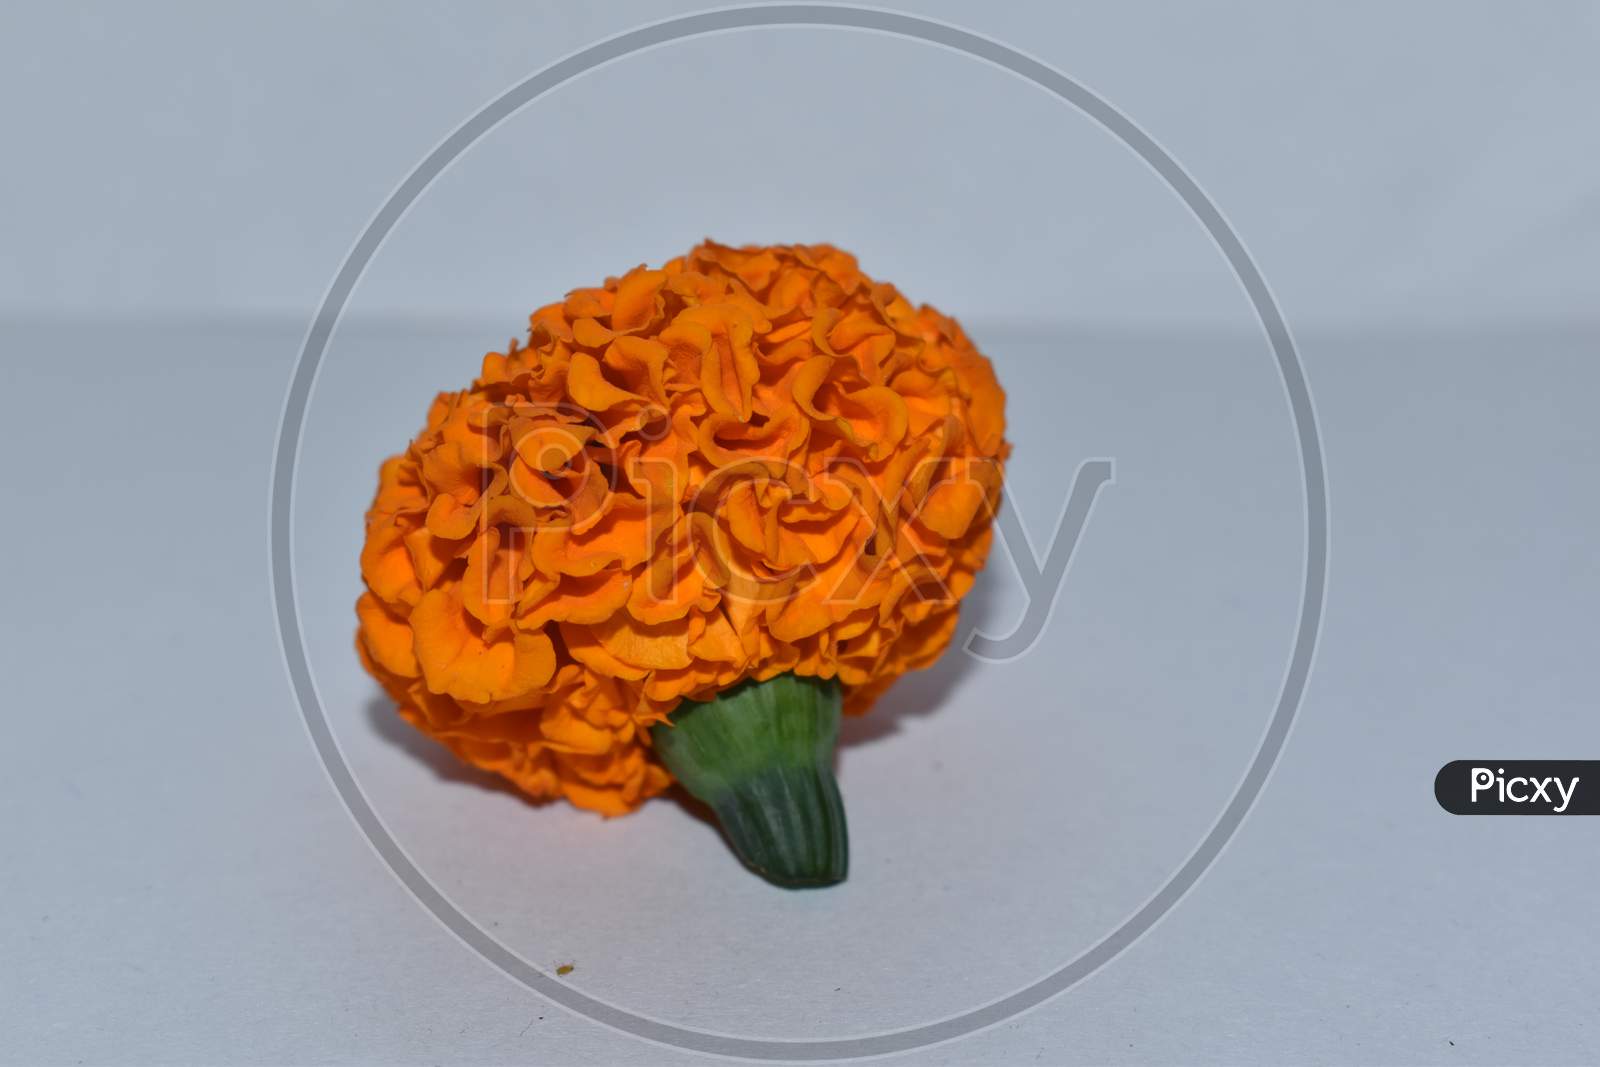 Marigold Flower Isolated On White Background